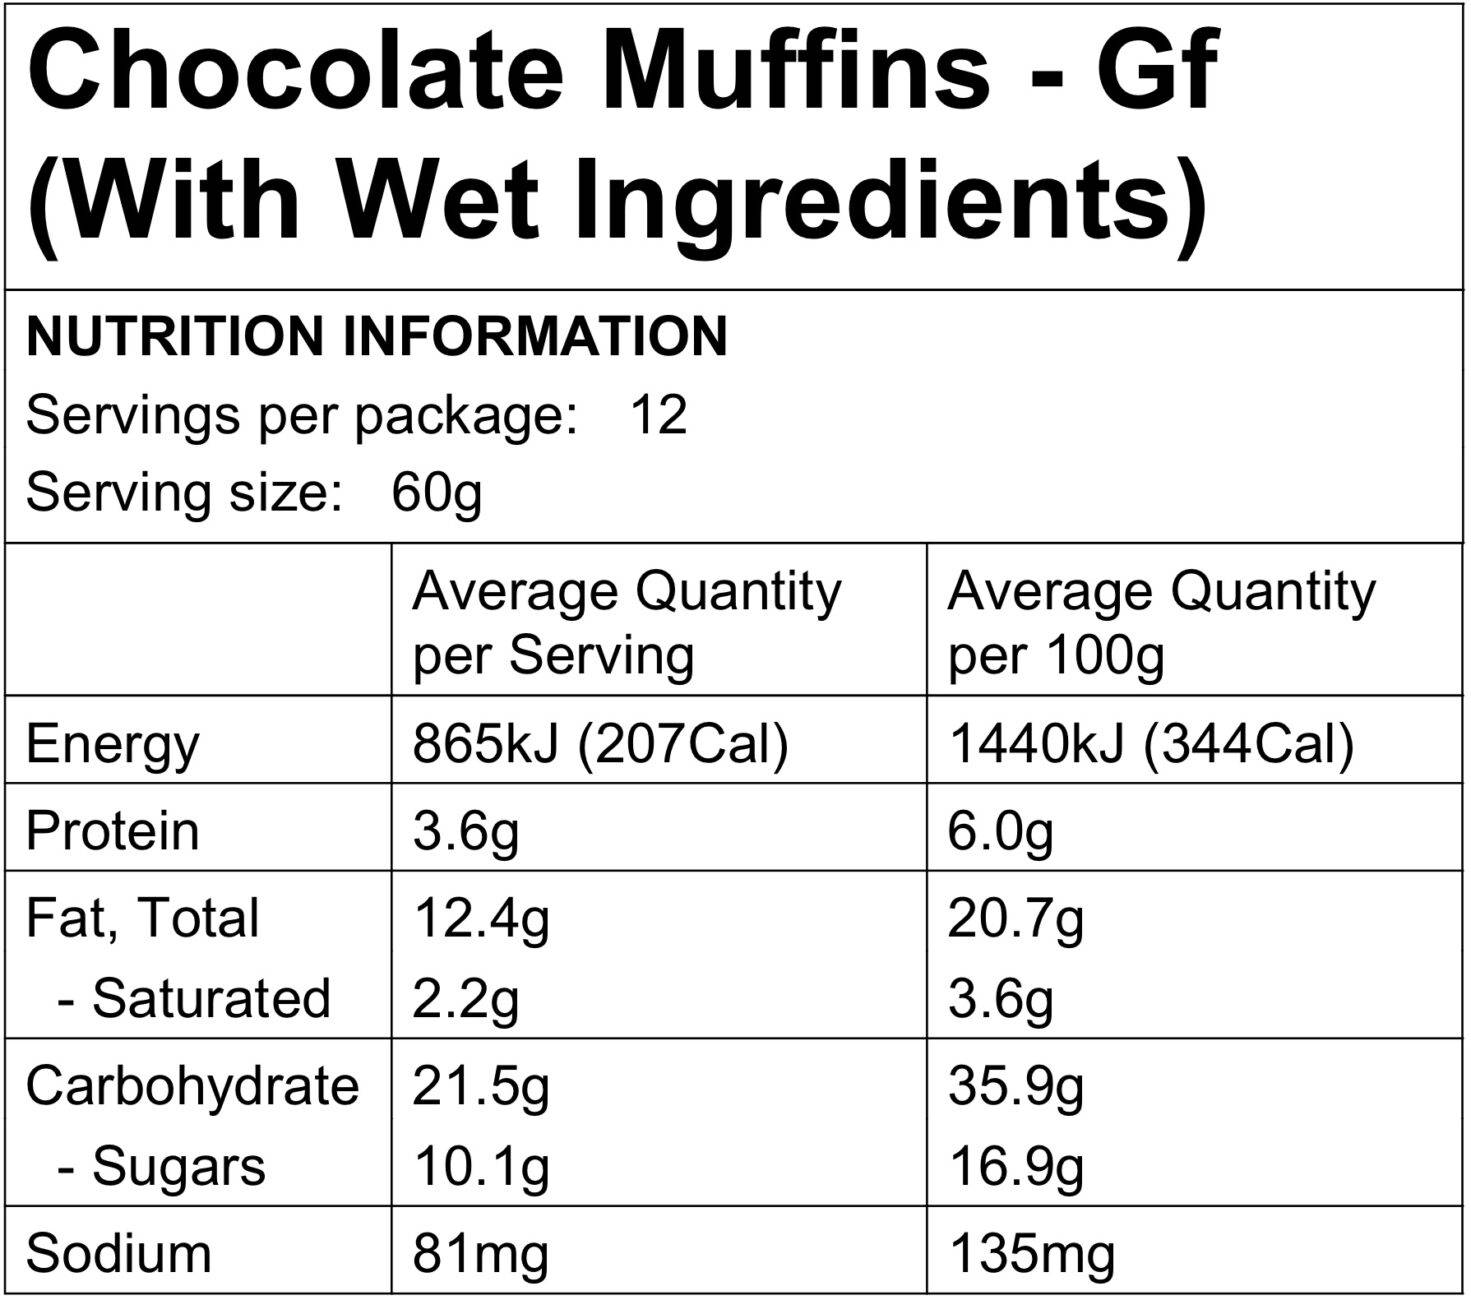 Food to Nourish Chocolate Muffin Mix 360g